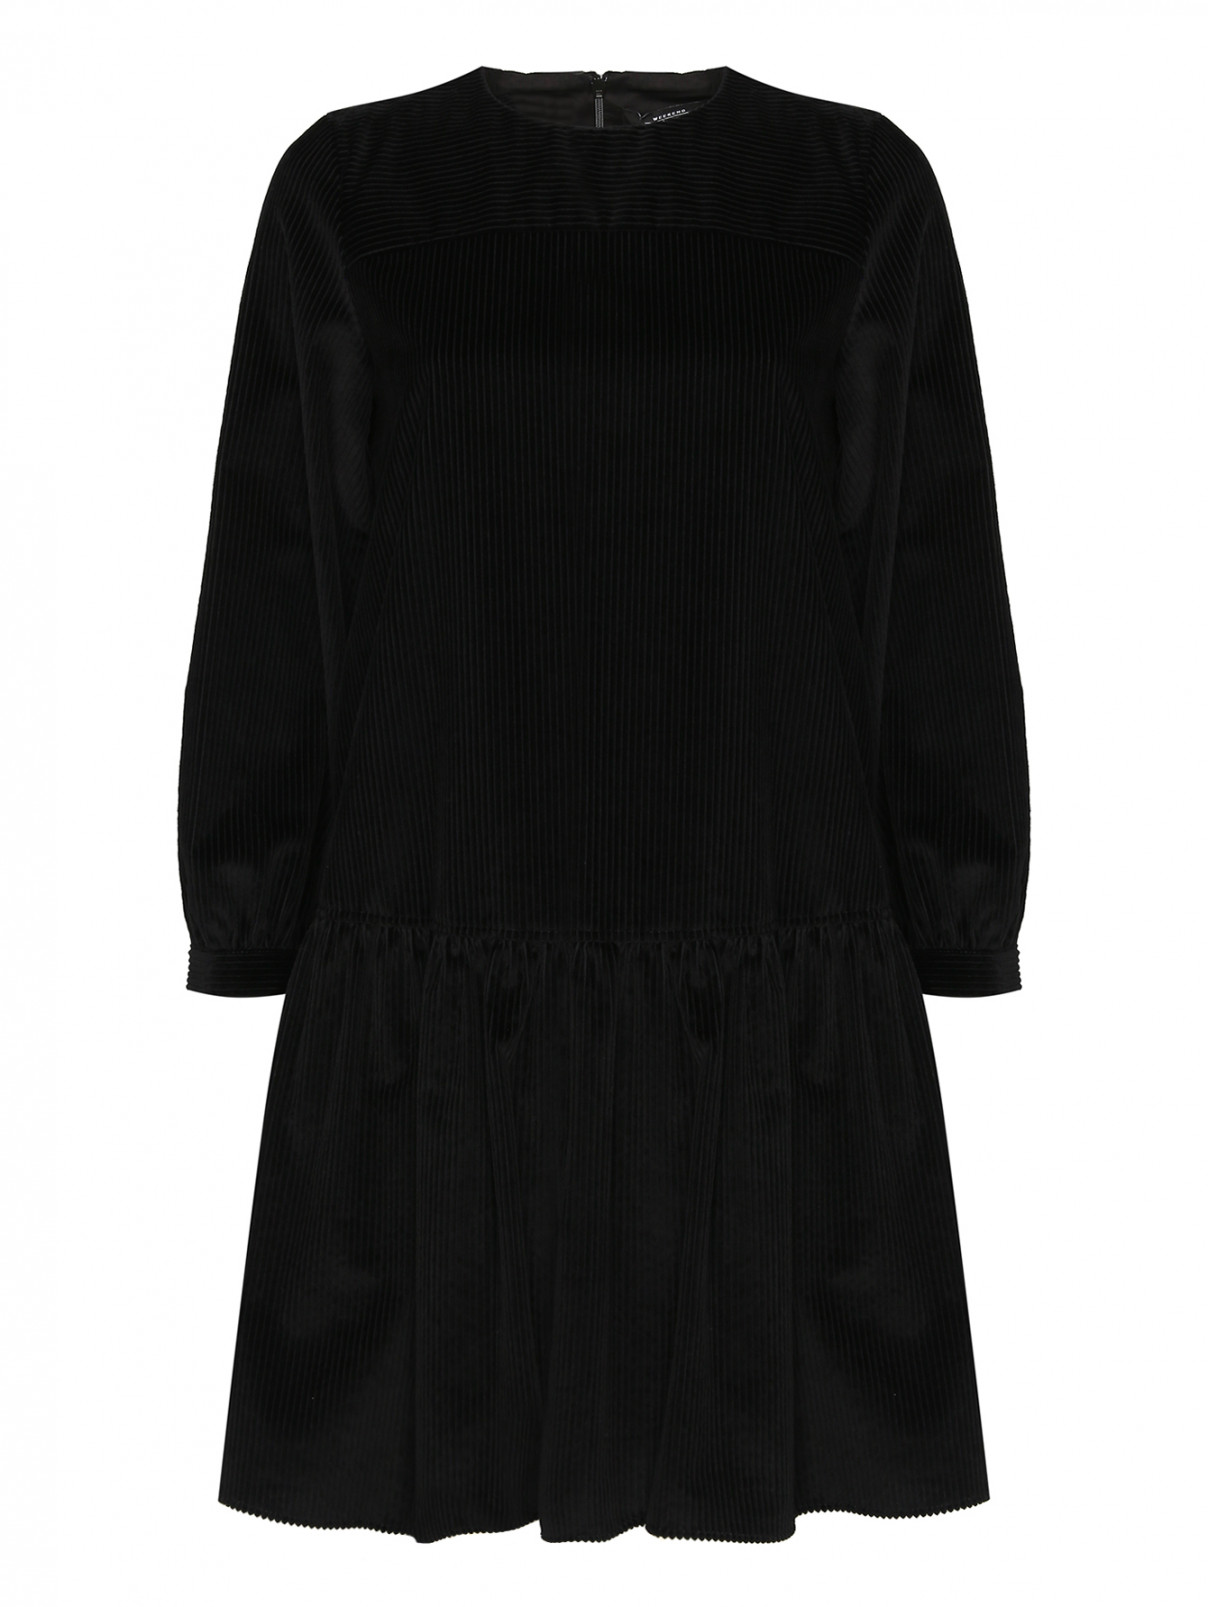 Однотонное платье из хлопка Weekend Max Mara  –  Общий вид  – Цвет:  Черный